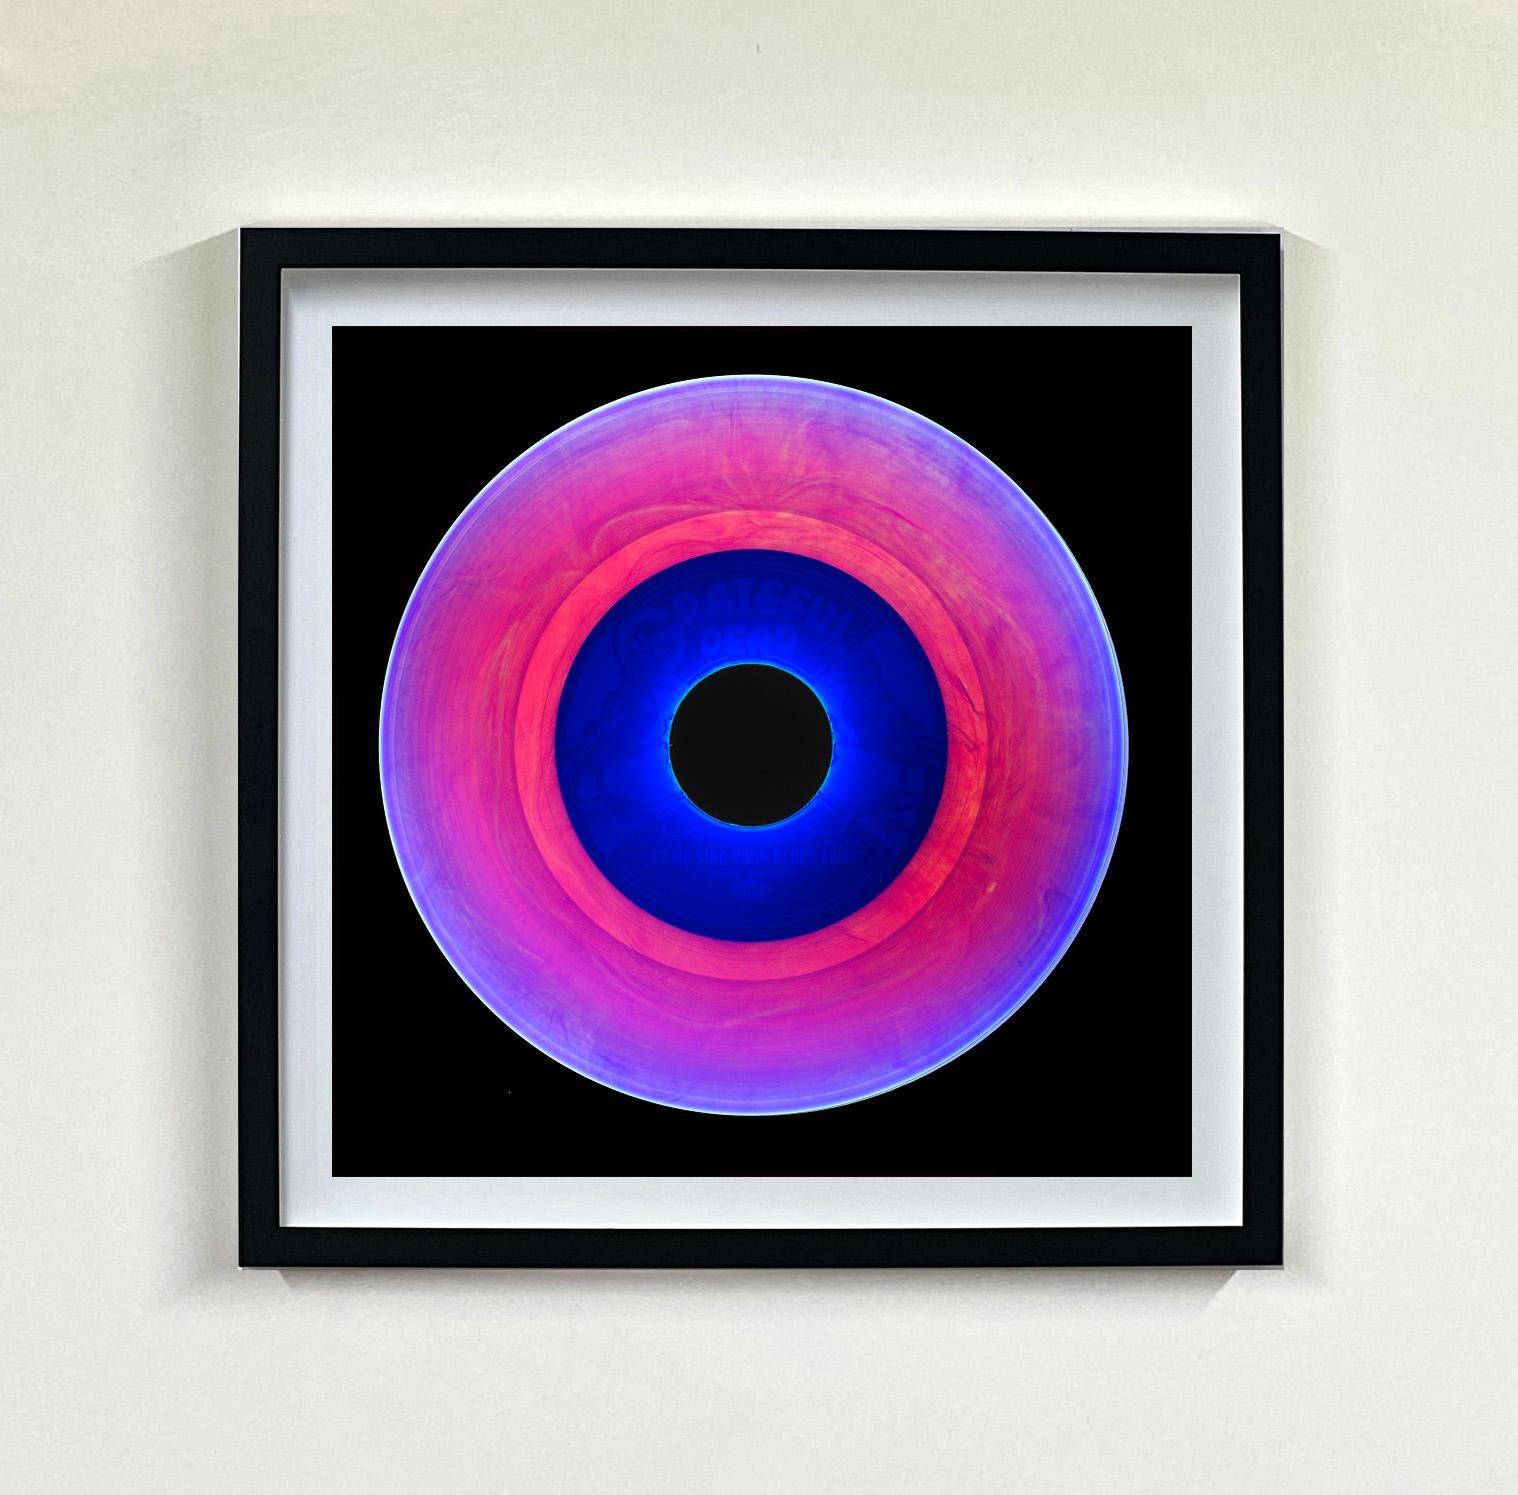 Heidler & Heeps Vinyl Collection Fünfundzwanzigteilige mehrfarbige quadratische Installation.
Die renommierten zeitgenössischen Fotografen Richard Heeps und Natasha Heidler haben für diese wunderschöne, faszinierende Kollektion zusammengearbeitet.